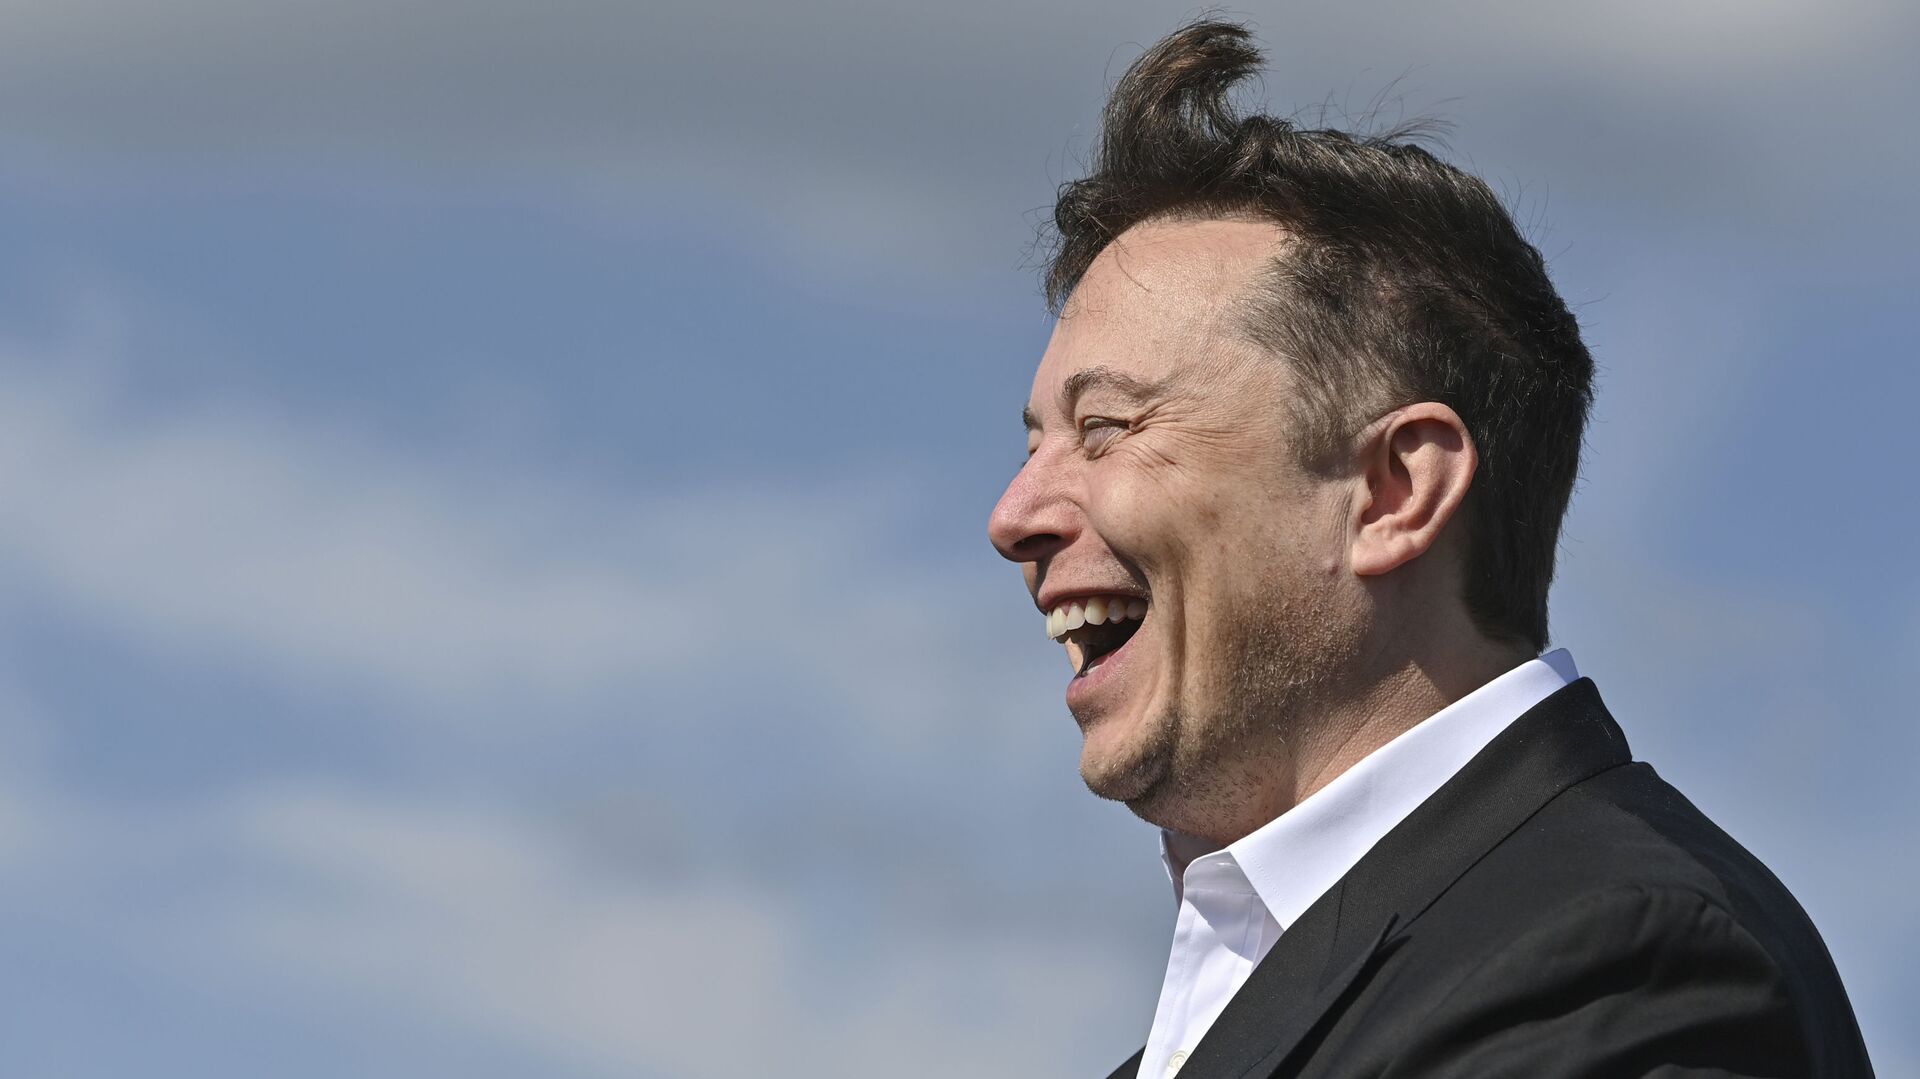 Doanh nhân công nghệ Elon Musk cười khi đến thăm công trường xây dựng Tesla Gigafactory ở Gruenheide gần Berlin, Đức, ngày 3 tháng 9 năm 2020. - Sputnik Việt Nam, 1920, 11.11.2021